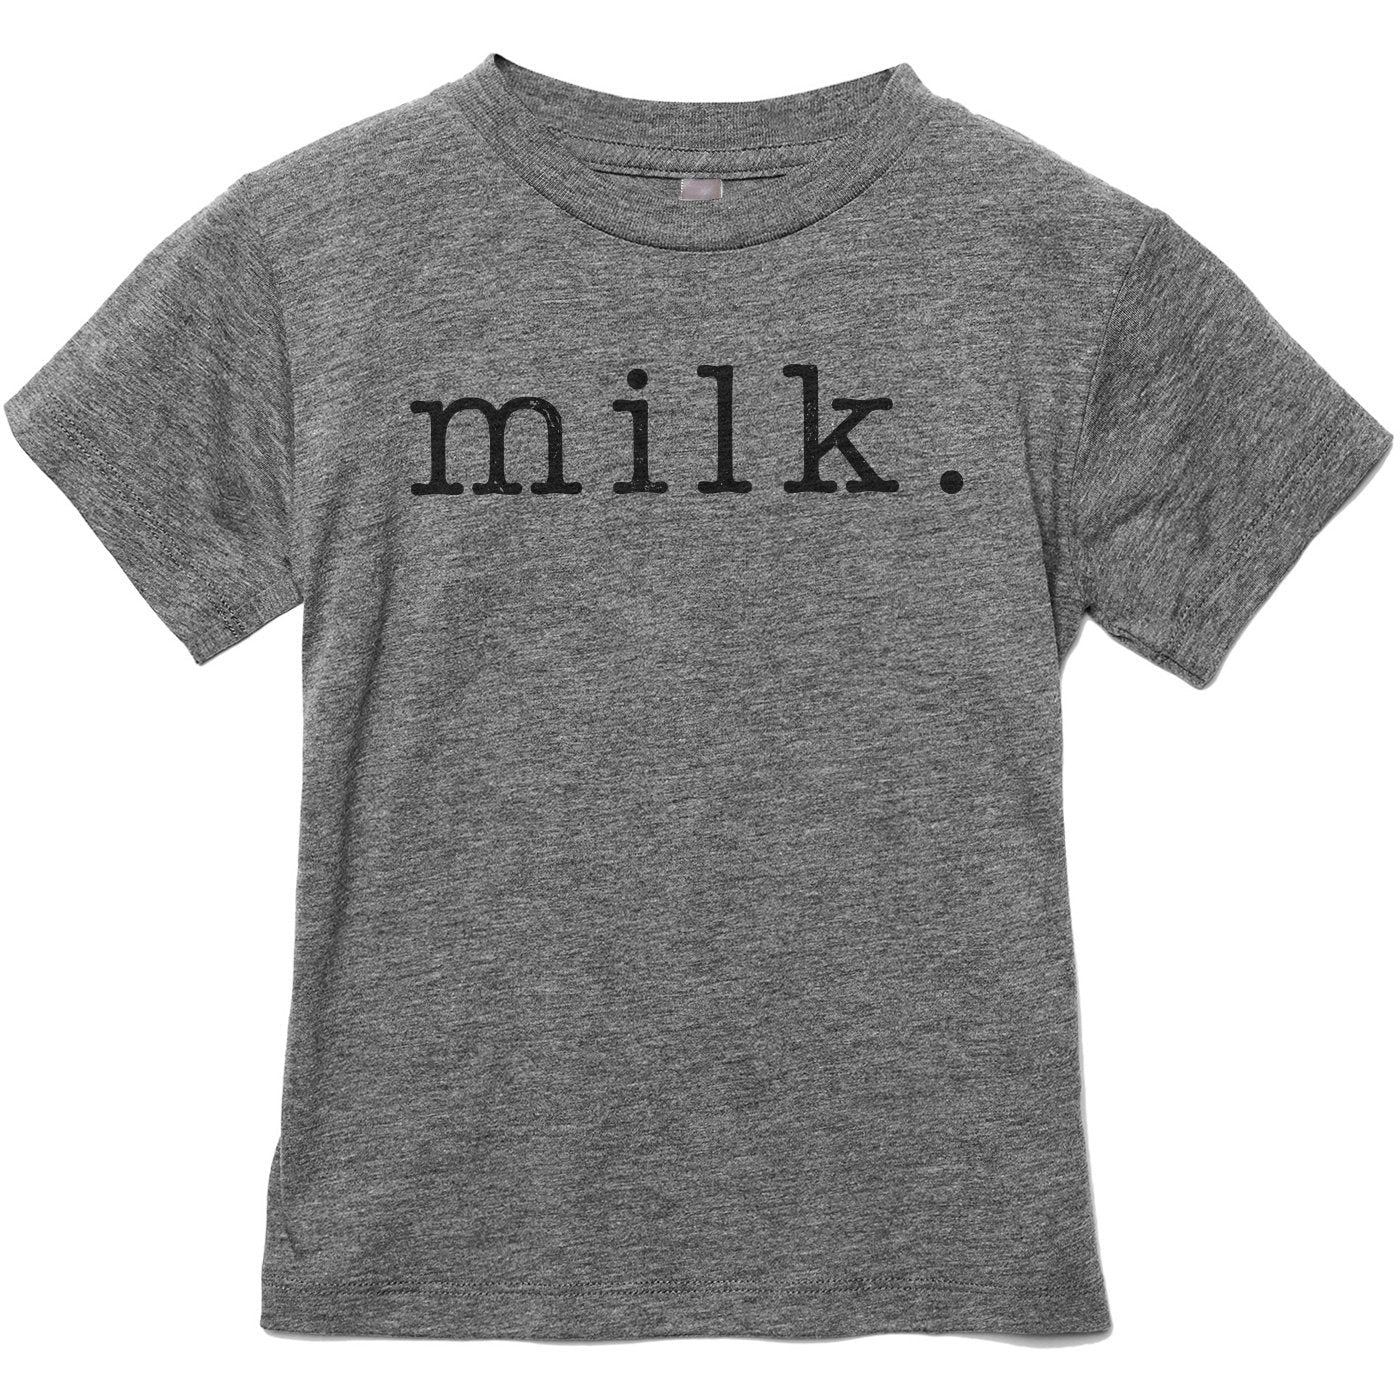 Milk Text